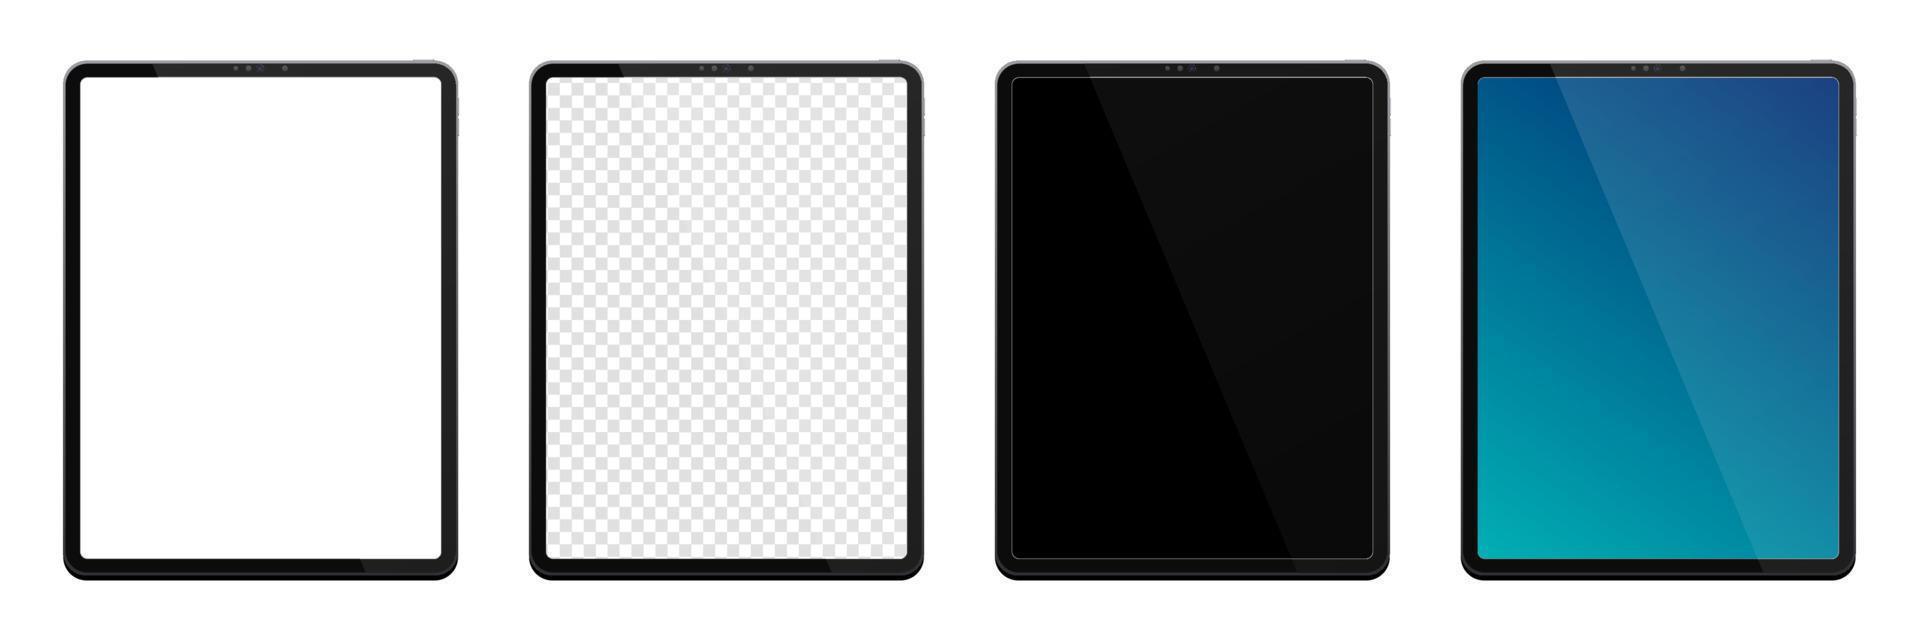 realistische modellen tablet. tablet mockup-collectie. moderne zwarte tablet-pc. vooraanzicht van het apparaat. 3D-tablet. vector illustratie